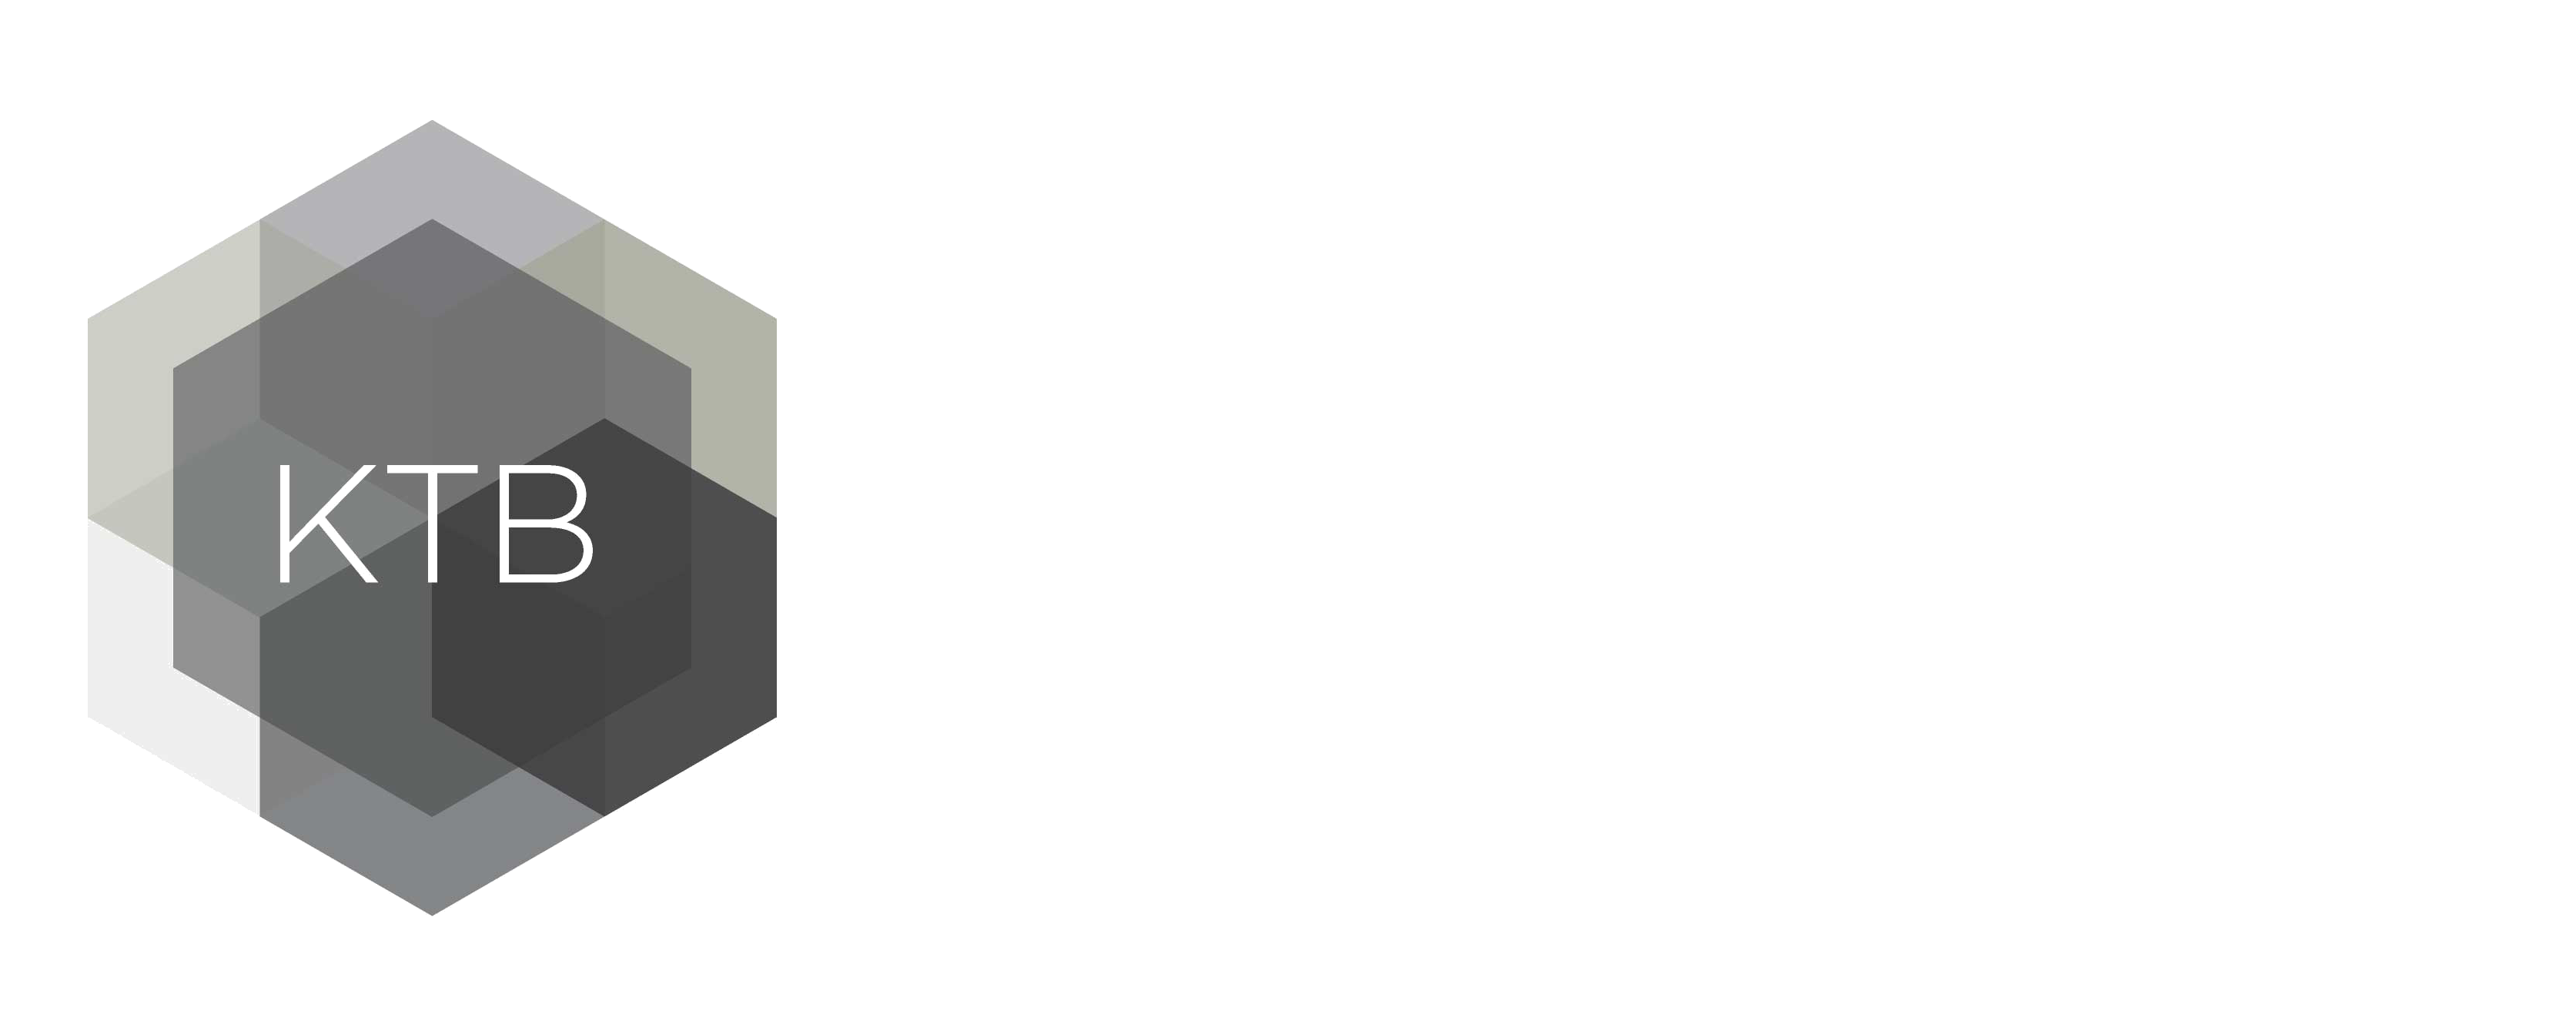 KTB Architecture